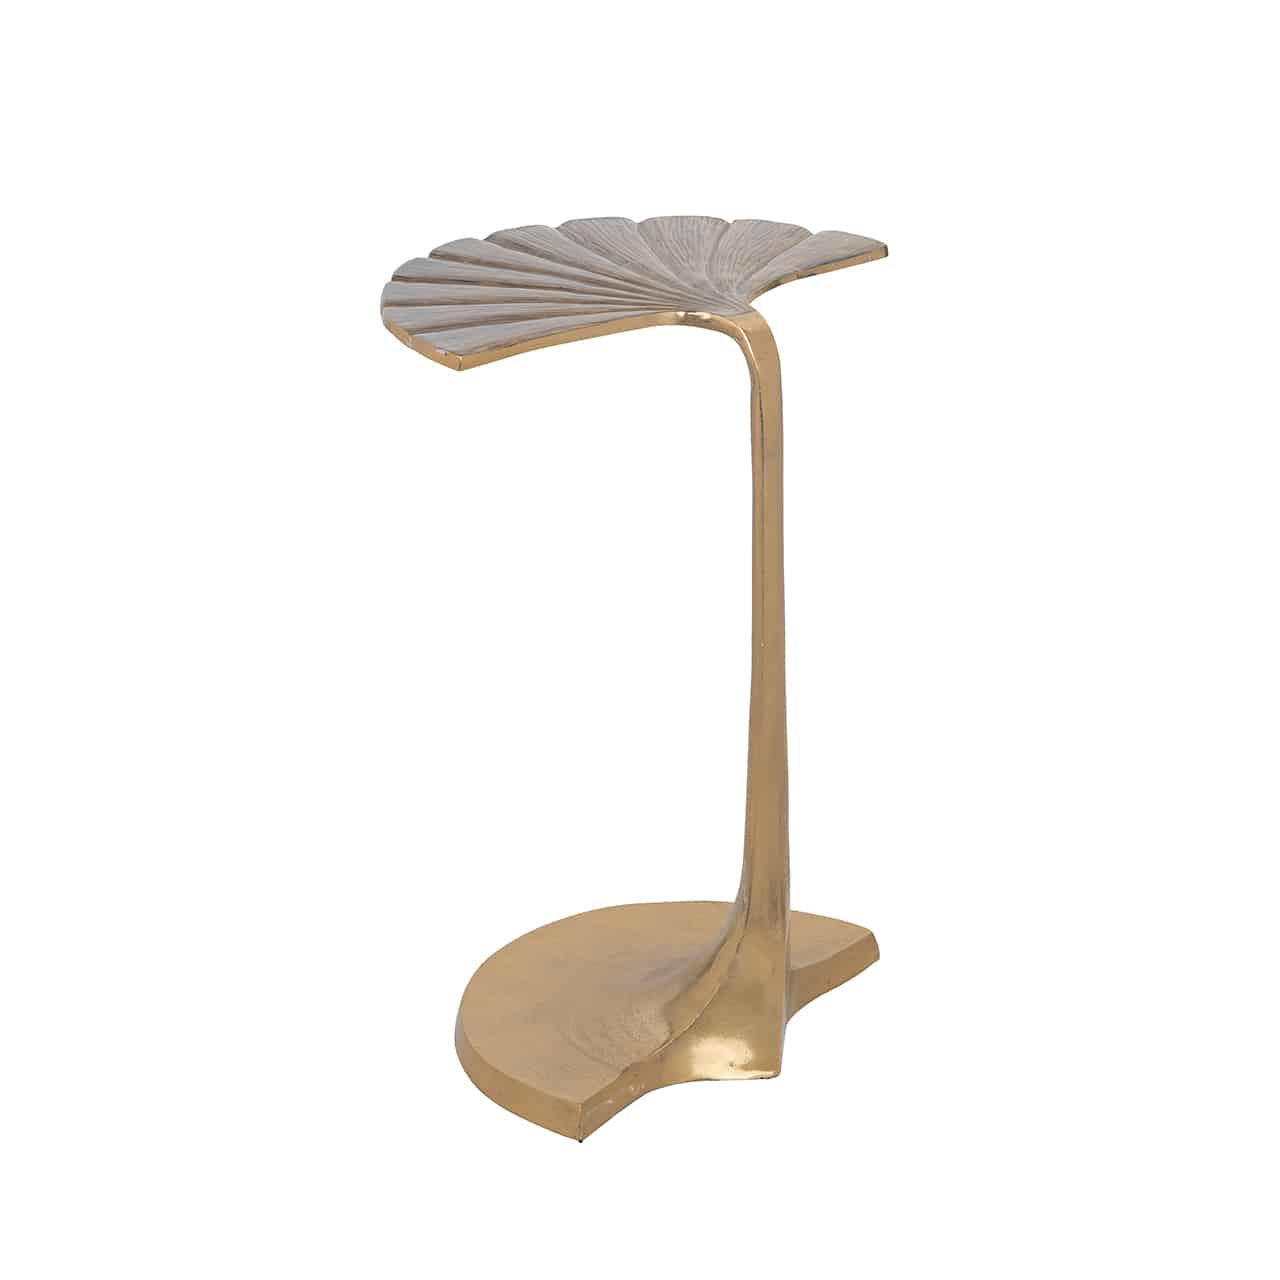 Goldener Beistelltisch; sowohl die Bodenplatte, als auch  die Tischoberfläche im Design eines halben Lotusblattes, beide verbunden durch einen stilisierten Blütenstängel, der den Fuß bildet. 